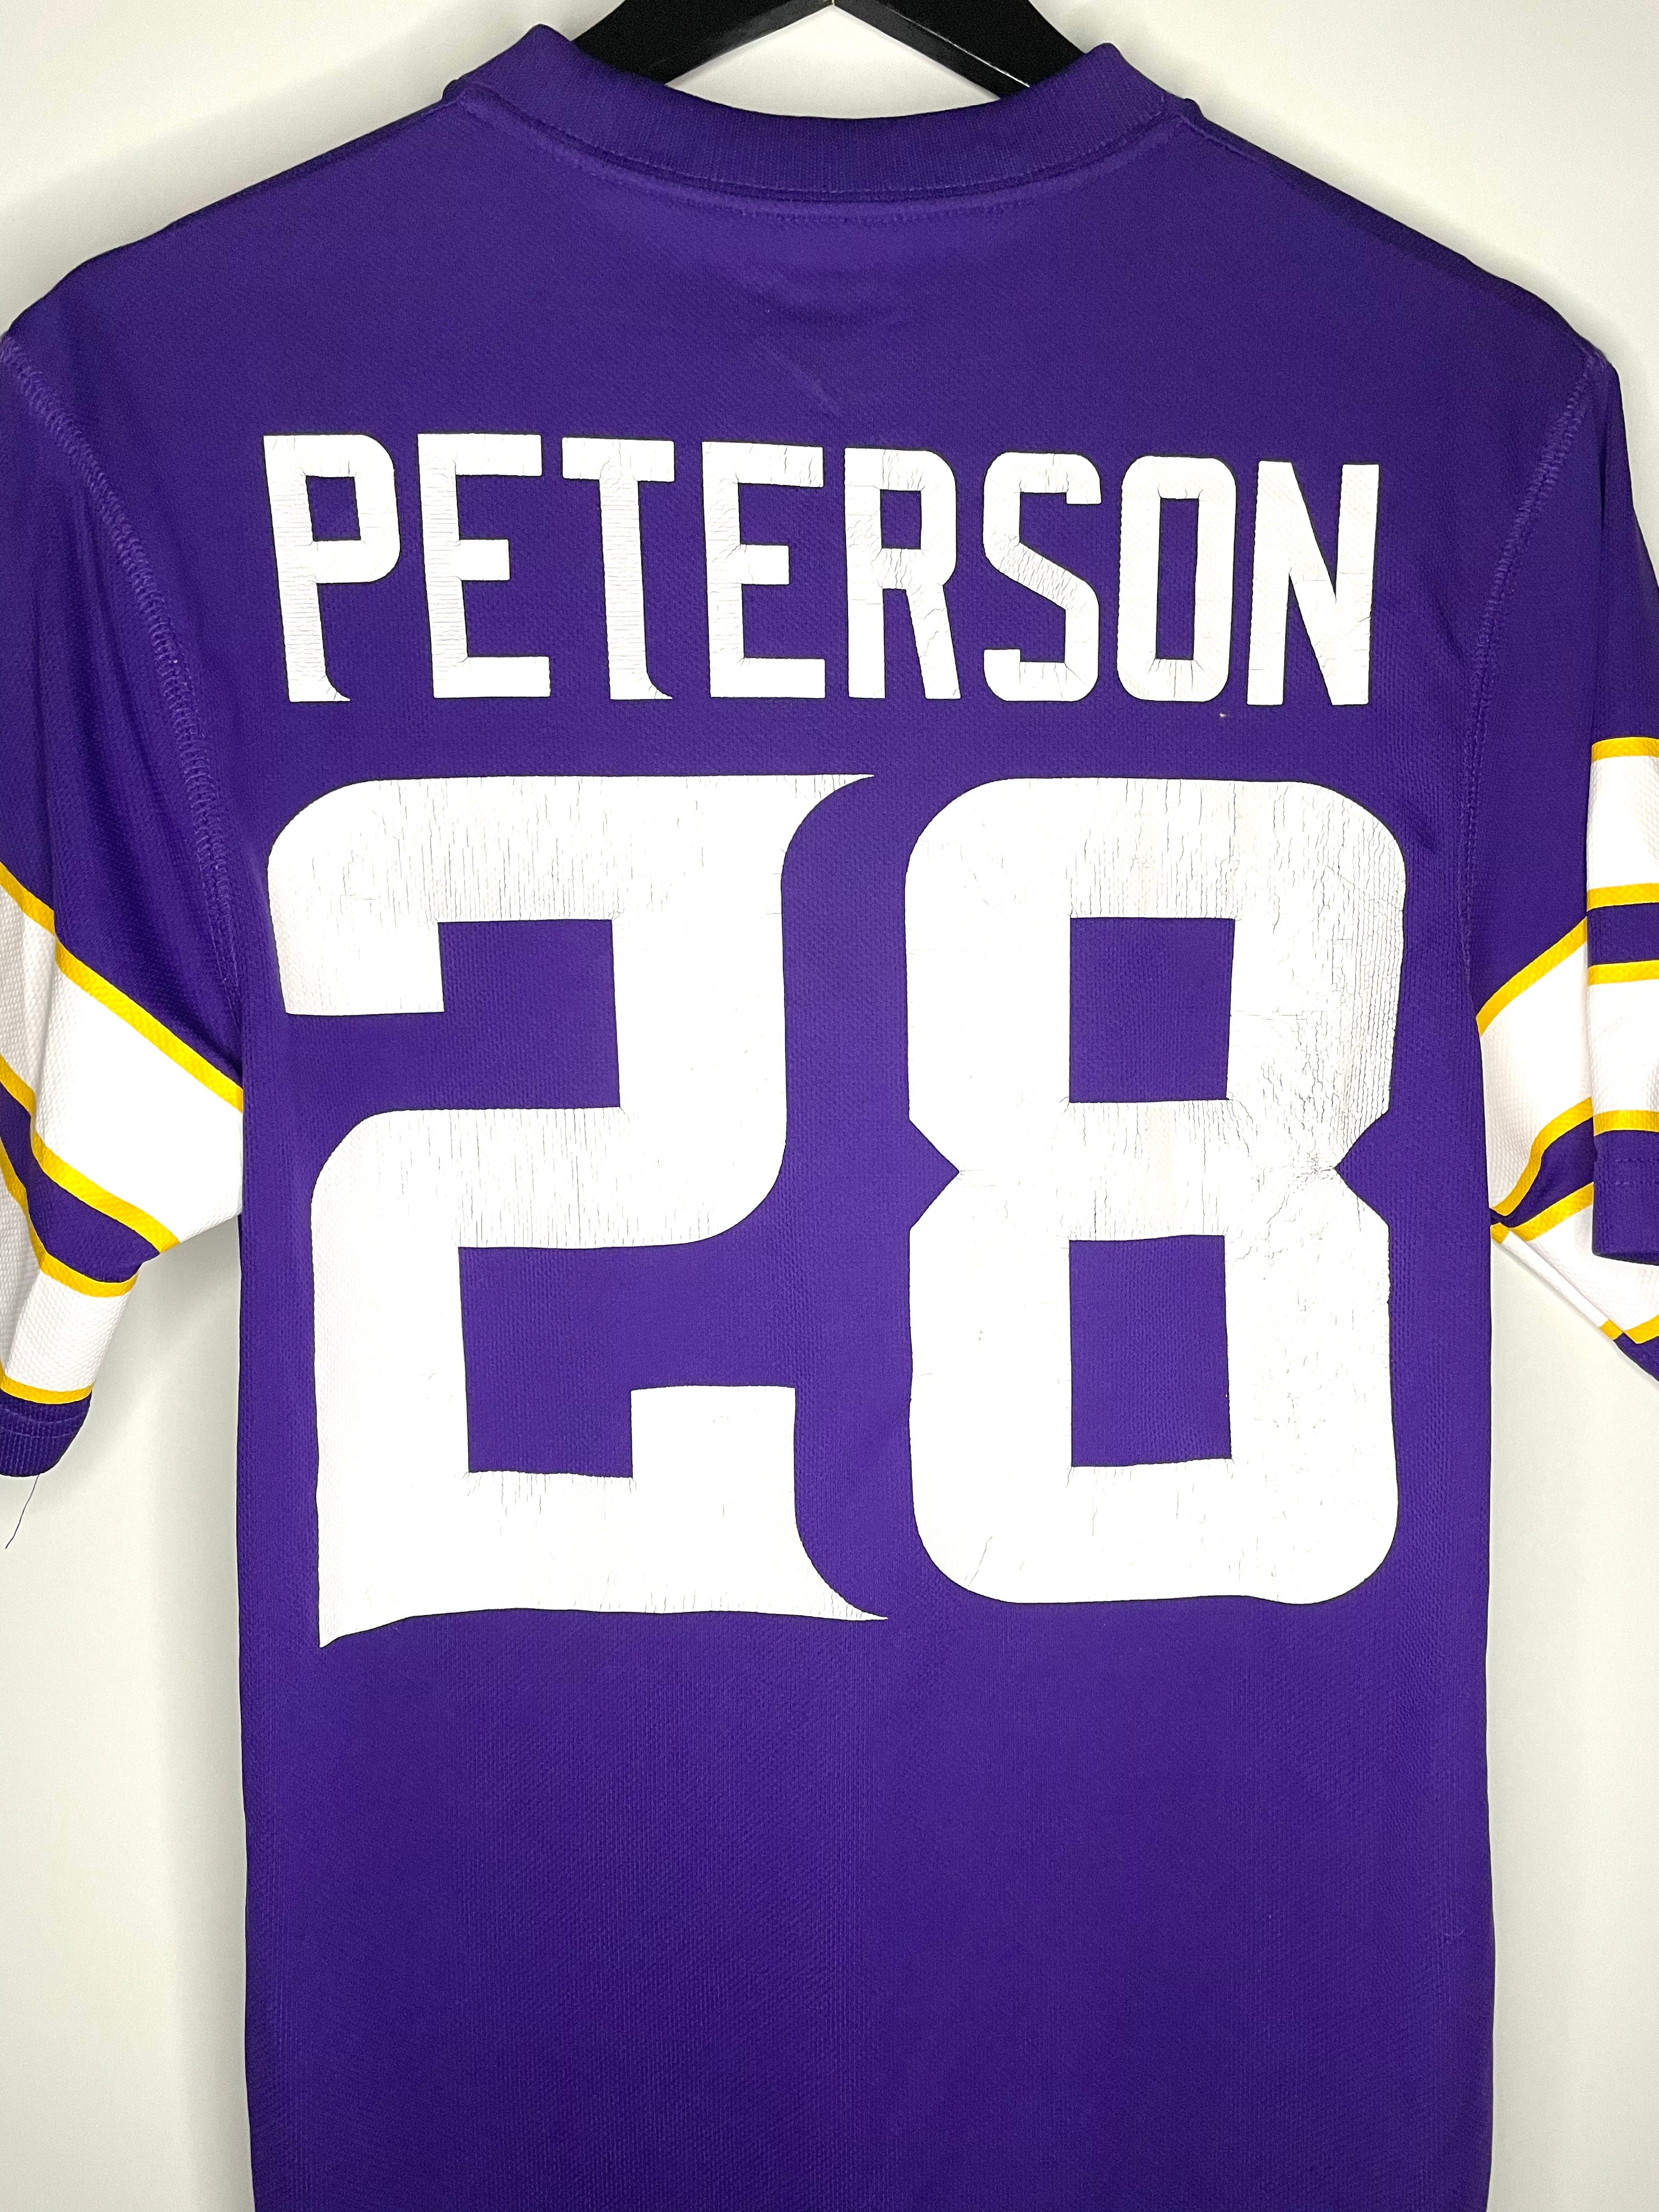 NFL Jersey Vikings Peterson Lila/Weiß Größe S